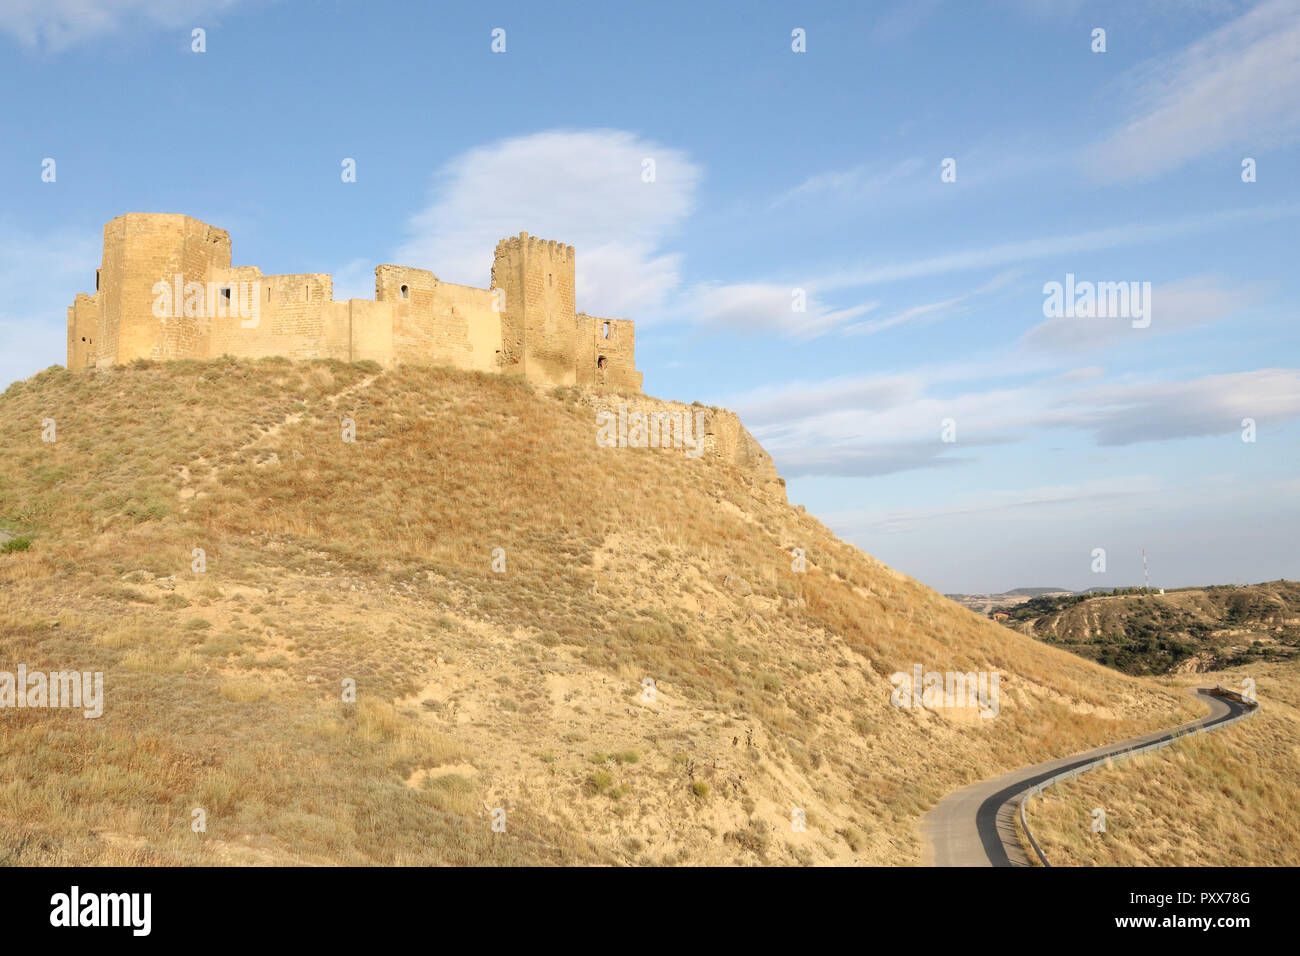 Un paisaje de la medieval abandonado Montearagon castillo, situado sobre una colina, entre campos de cultivo, labrados en una tarde de verano, en la región de Aragón, España Foto de stock